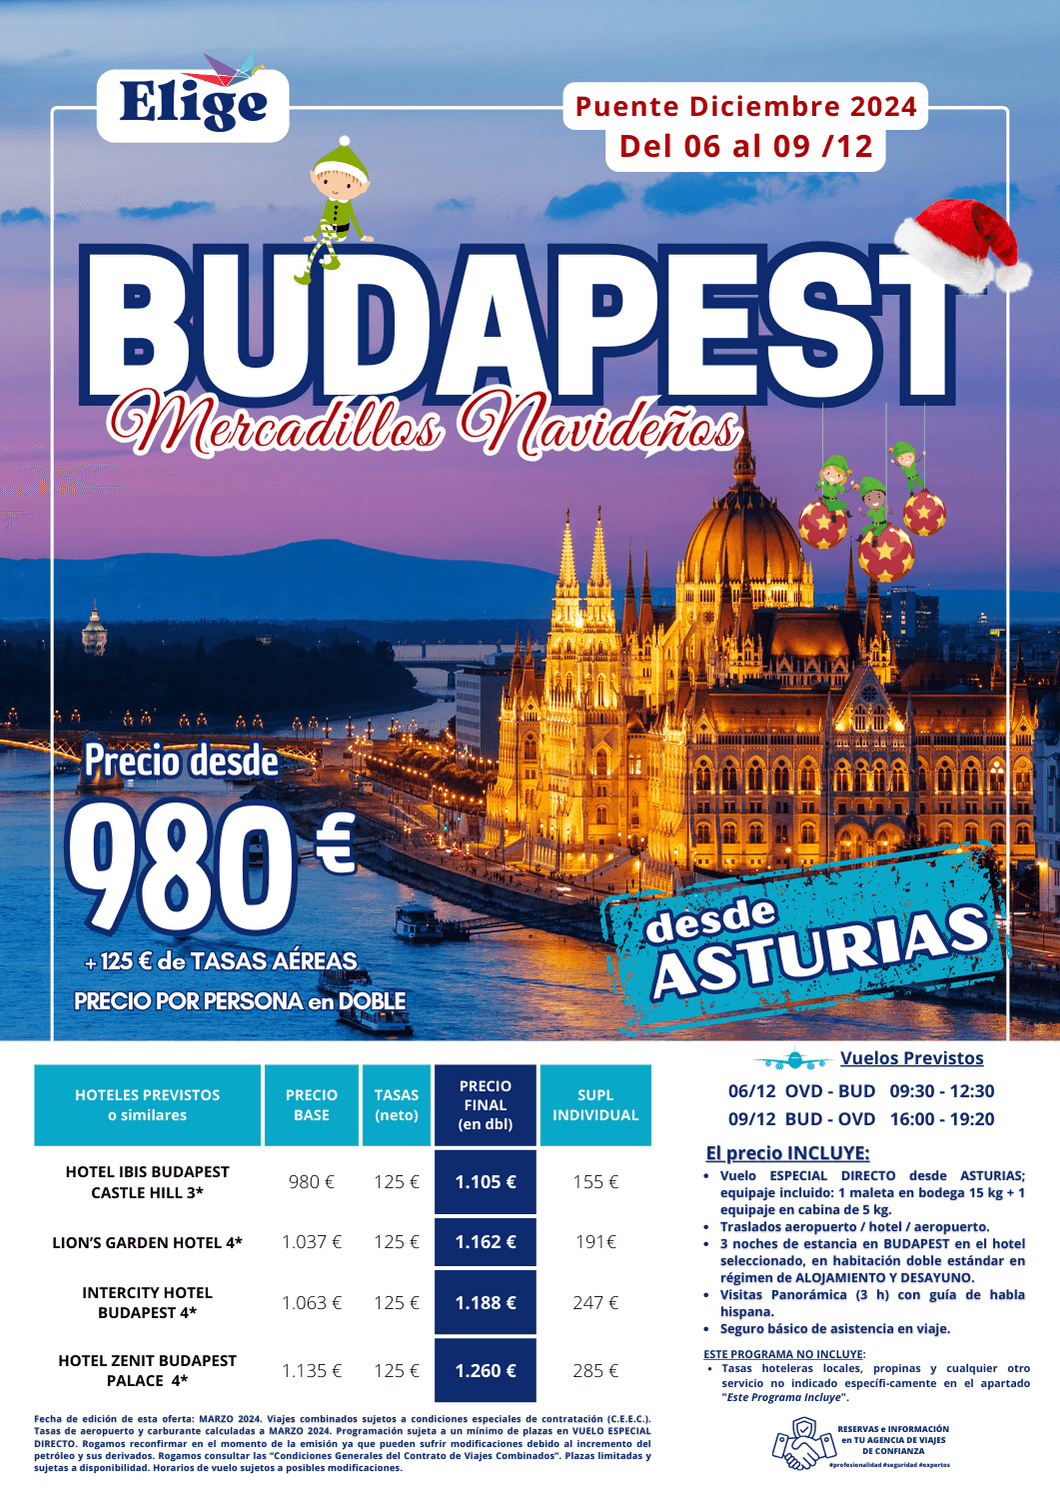 BUDAPEST, Puente de Diciembre 2024, en vuelo DIRECTO desde ASTURIAS, incluye alojamiento en hotel 3*, traslados y visita a la ciudad con guía local de habla hispana, para Agencias de Viajes con Elige Tu Viaje.